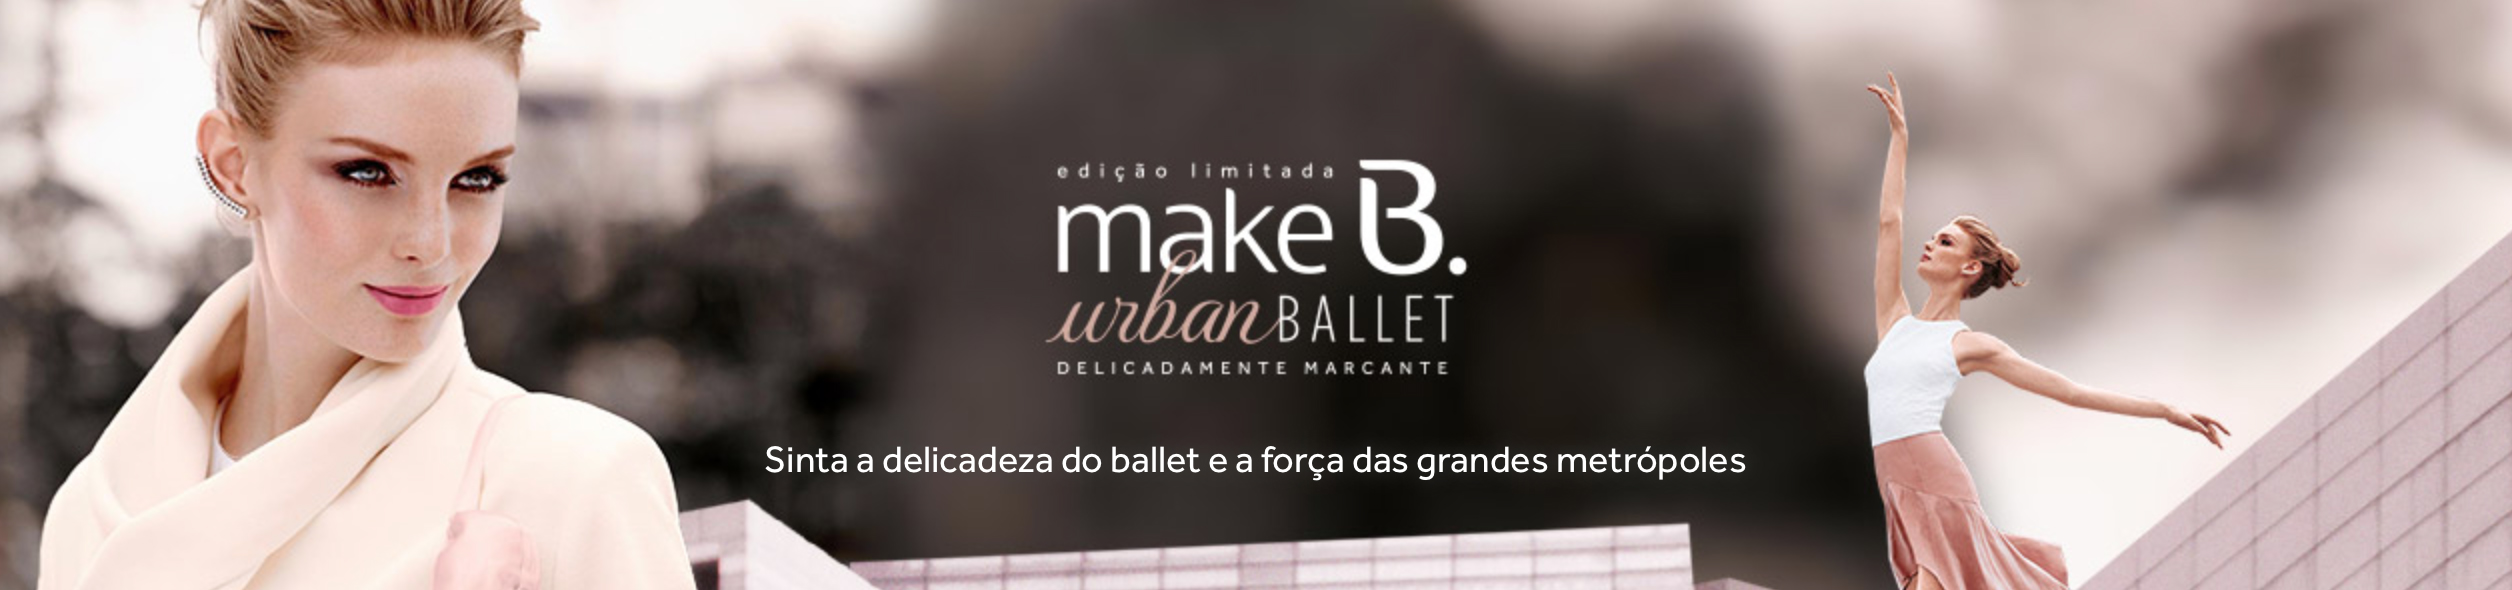 coleção make b urban ballet o boticario 1